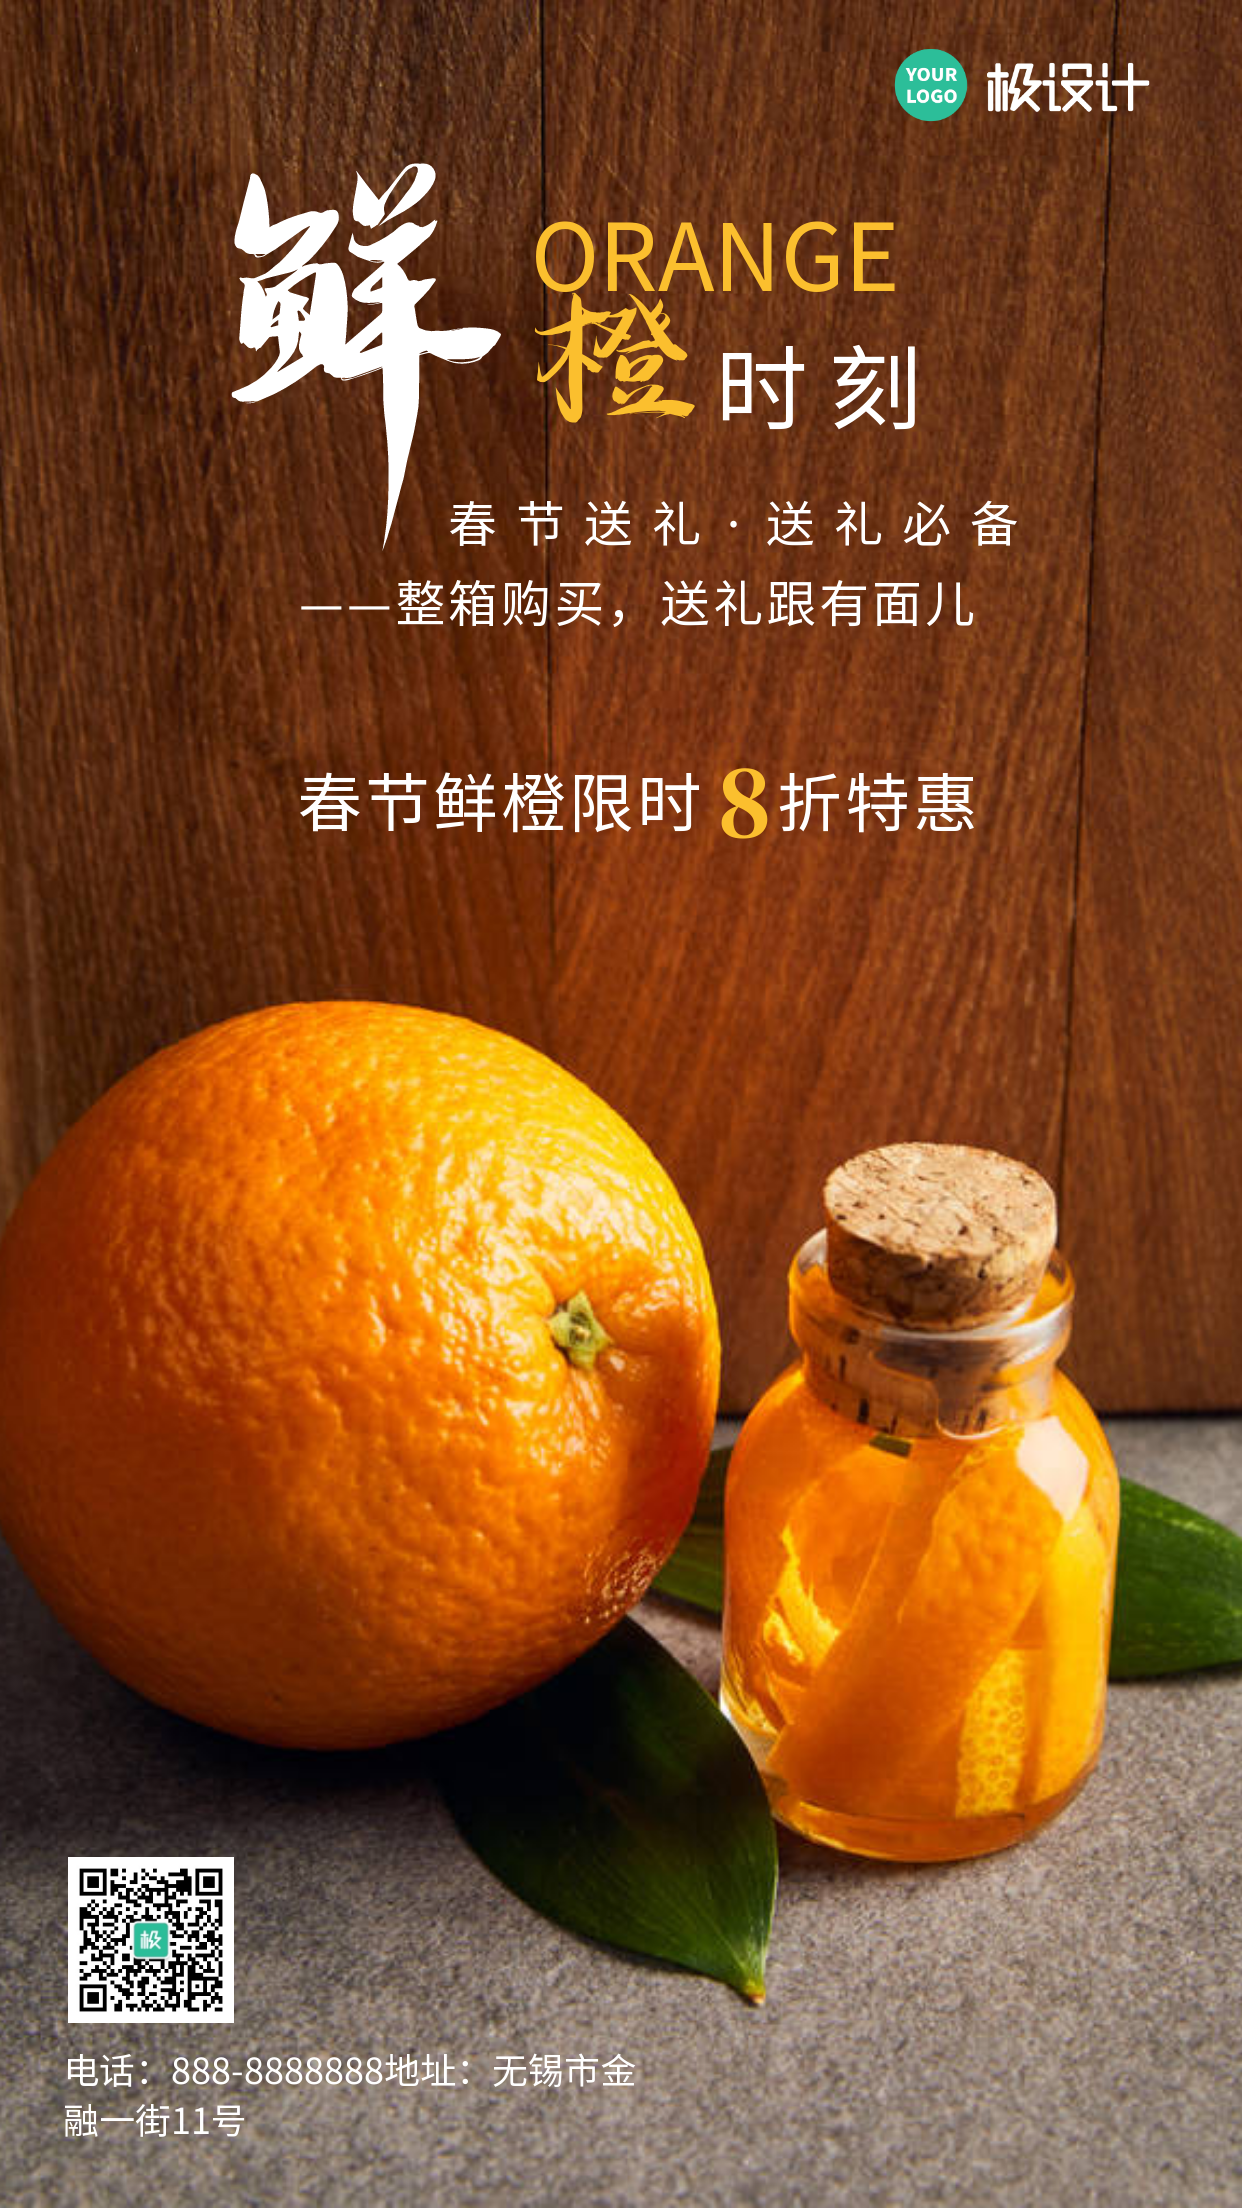 春节过年送礼必备产品介绍橙色简约手机海报